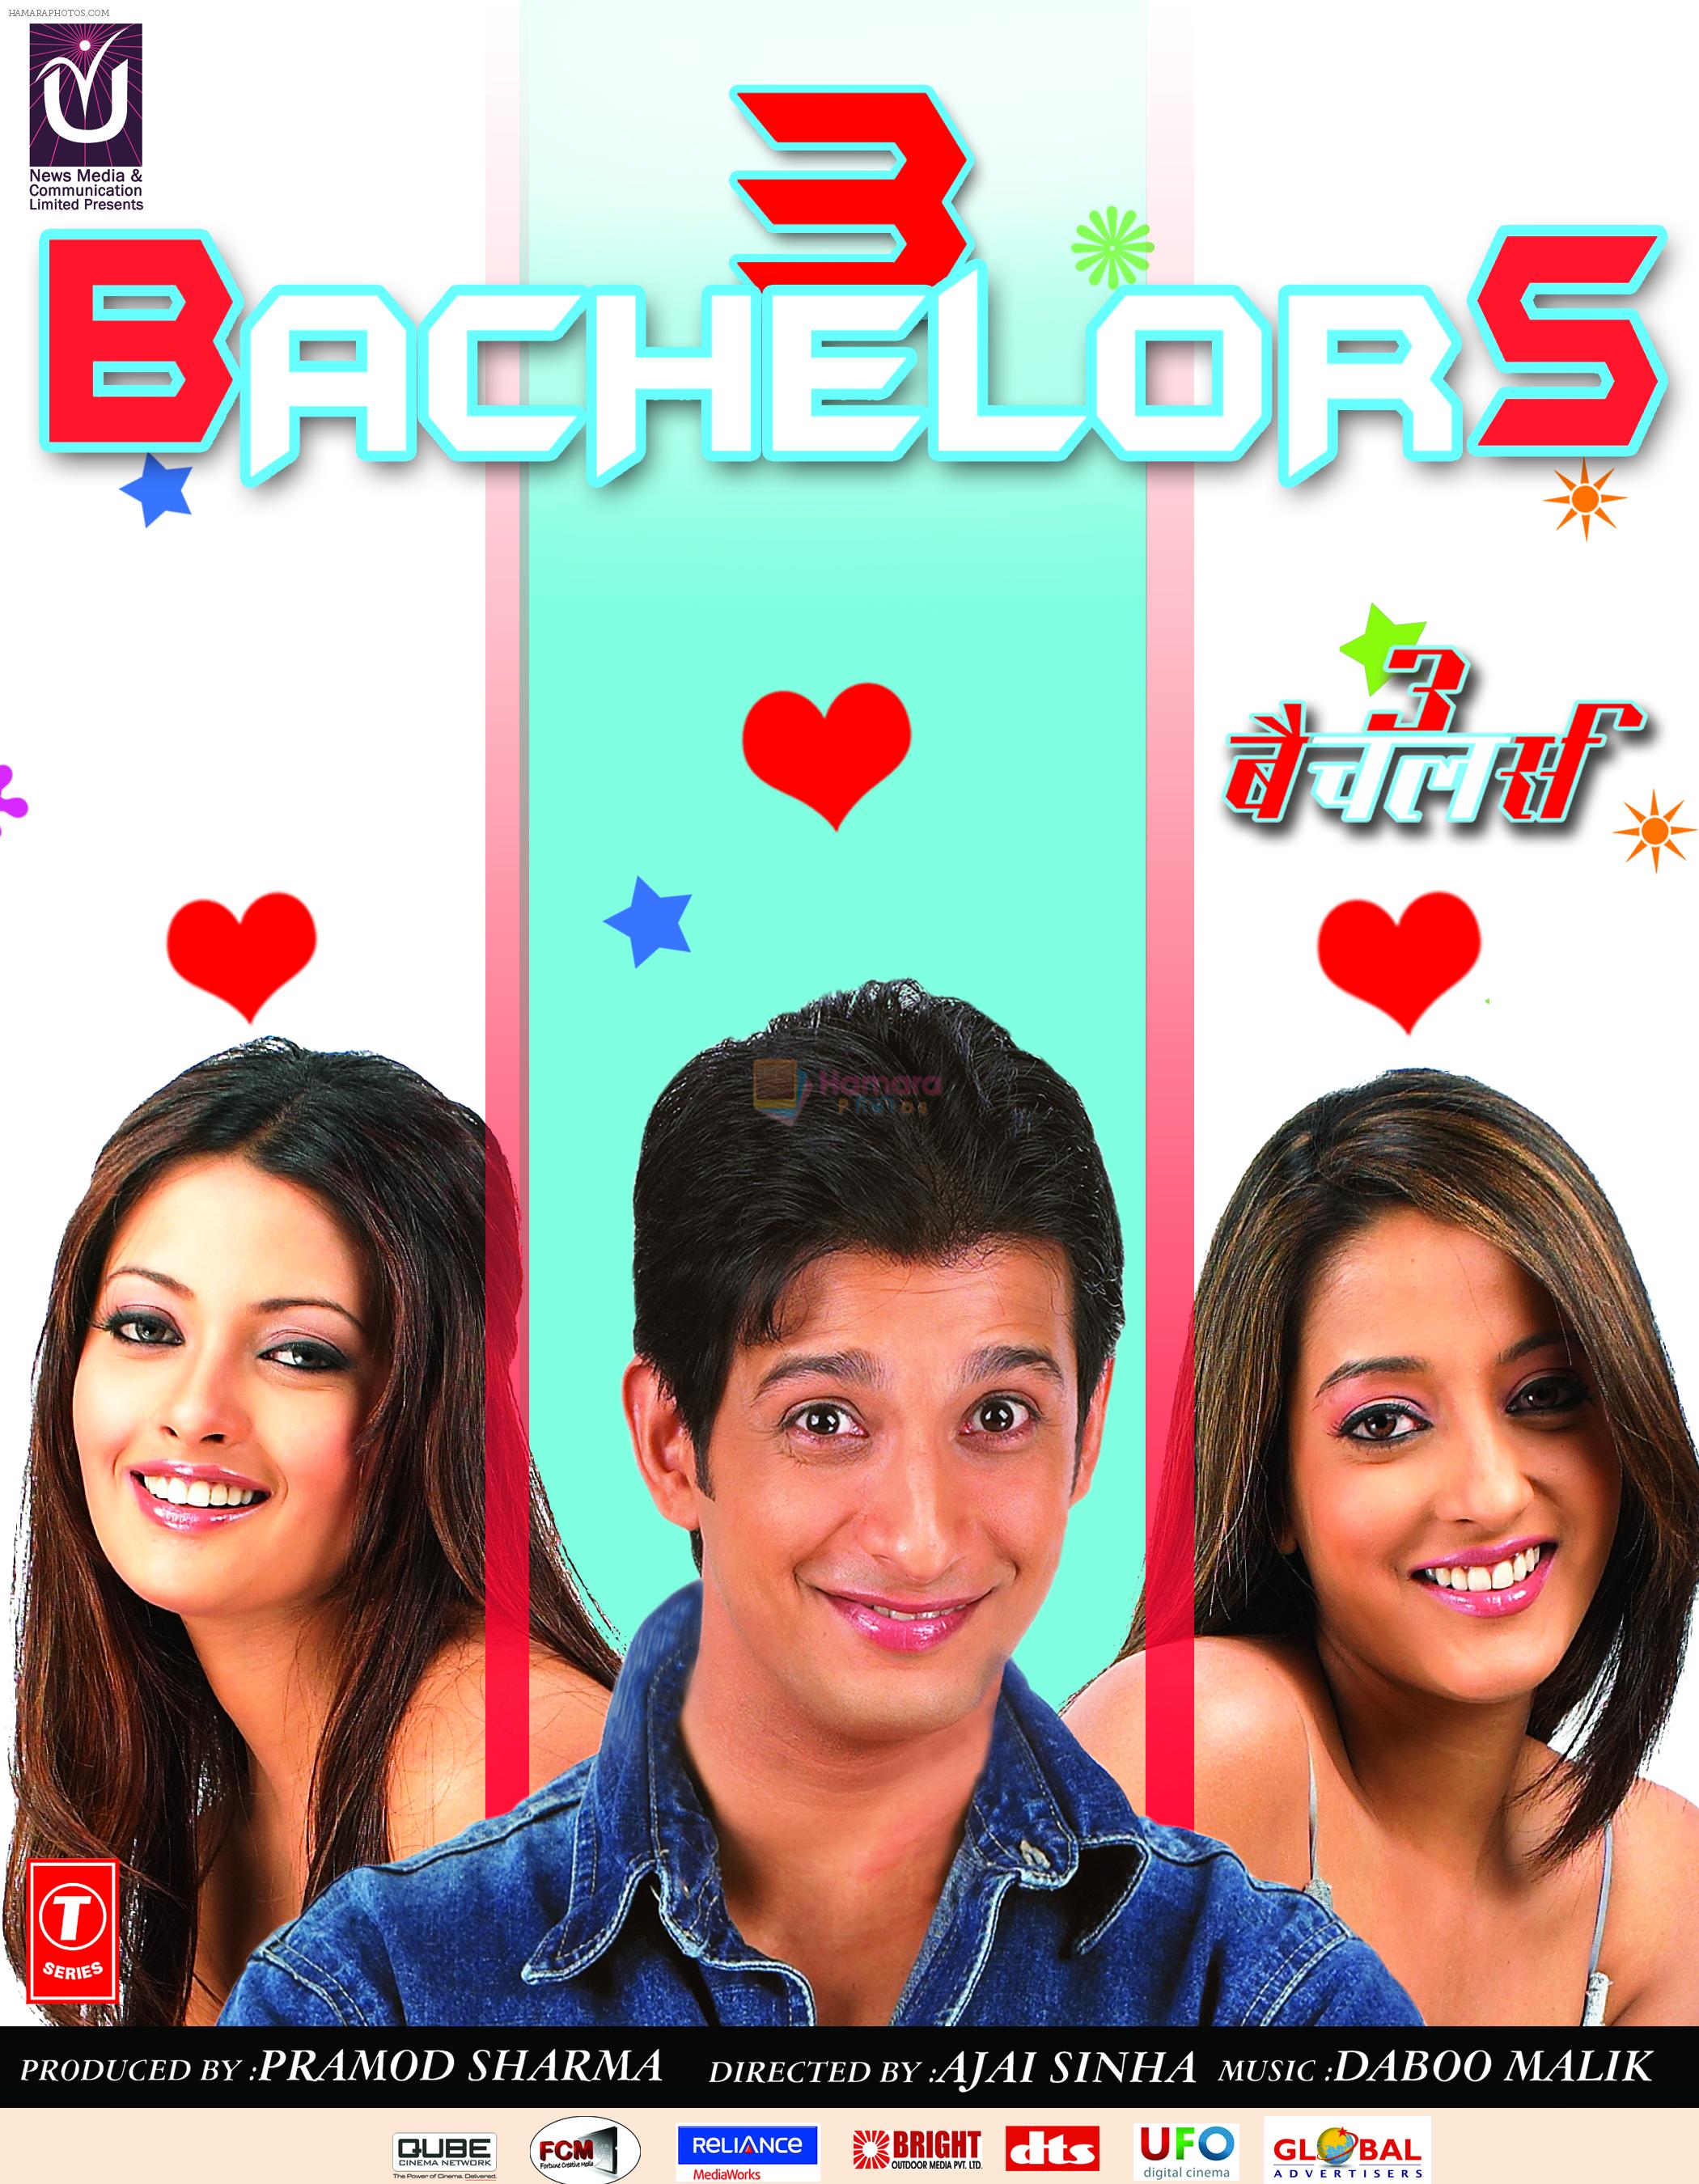 Sharman Joshi, Riya Sen, Raima Sen in the still from movie 3 Bachelors